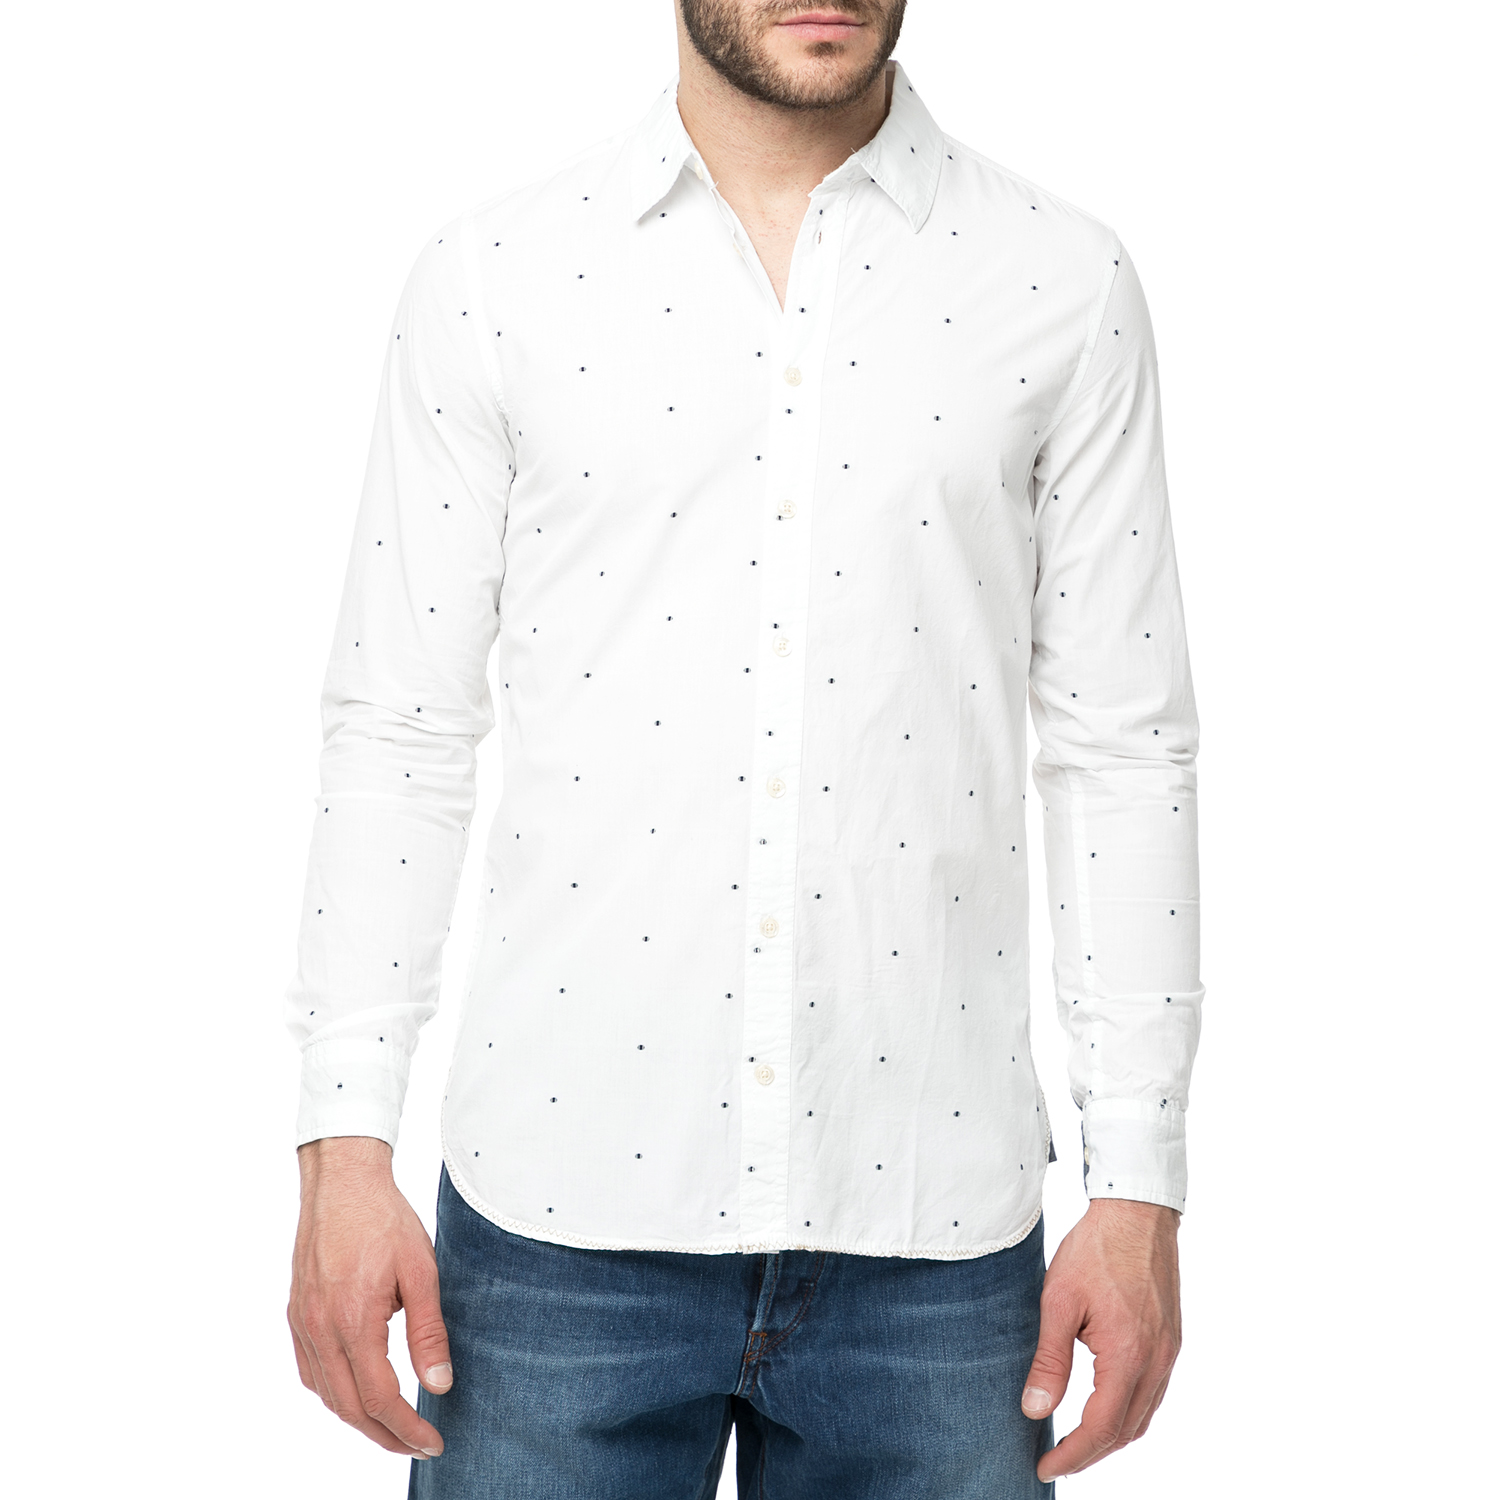 Ανδρικά/Ρούχα/Πουκάμισα/Μακρυμάνικα FUNKY BUDDHA - Ανδρικό πουκάμισο FUNKY BUDDHA λευκό με πουά μοτίβο